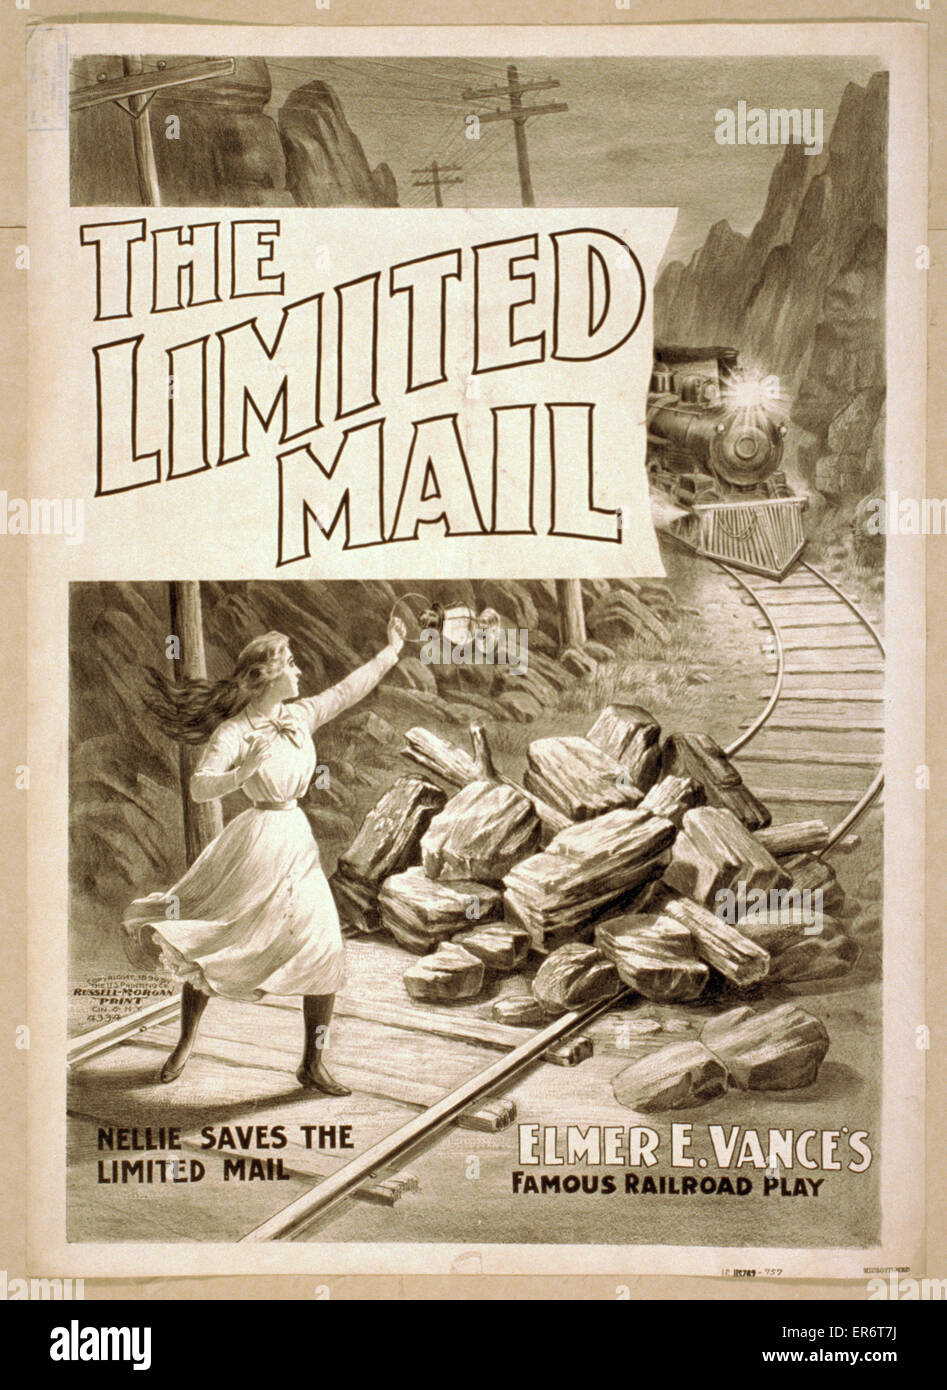 Le courrier limité Elmer E. Vance célèbre jeu de chemin de fer Banque D'Images